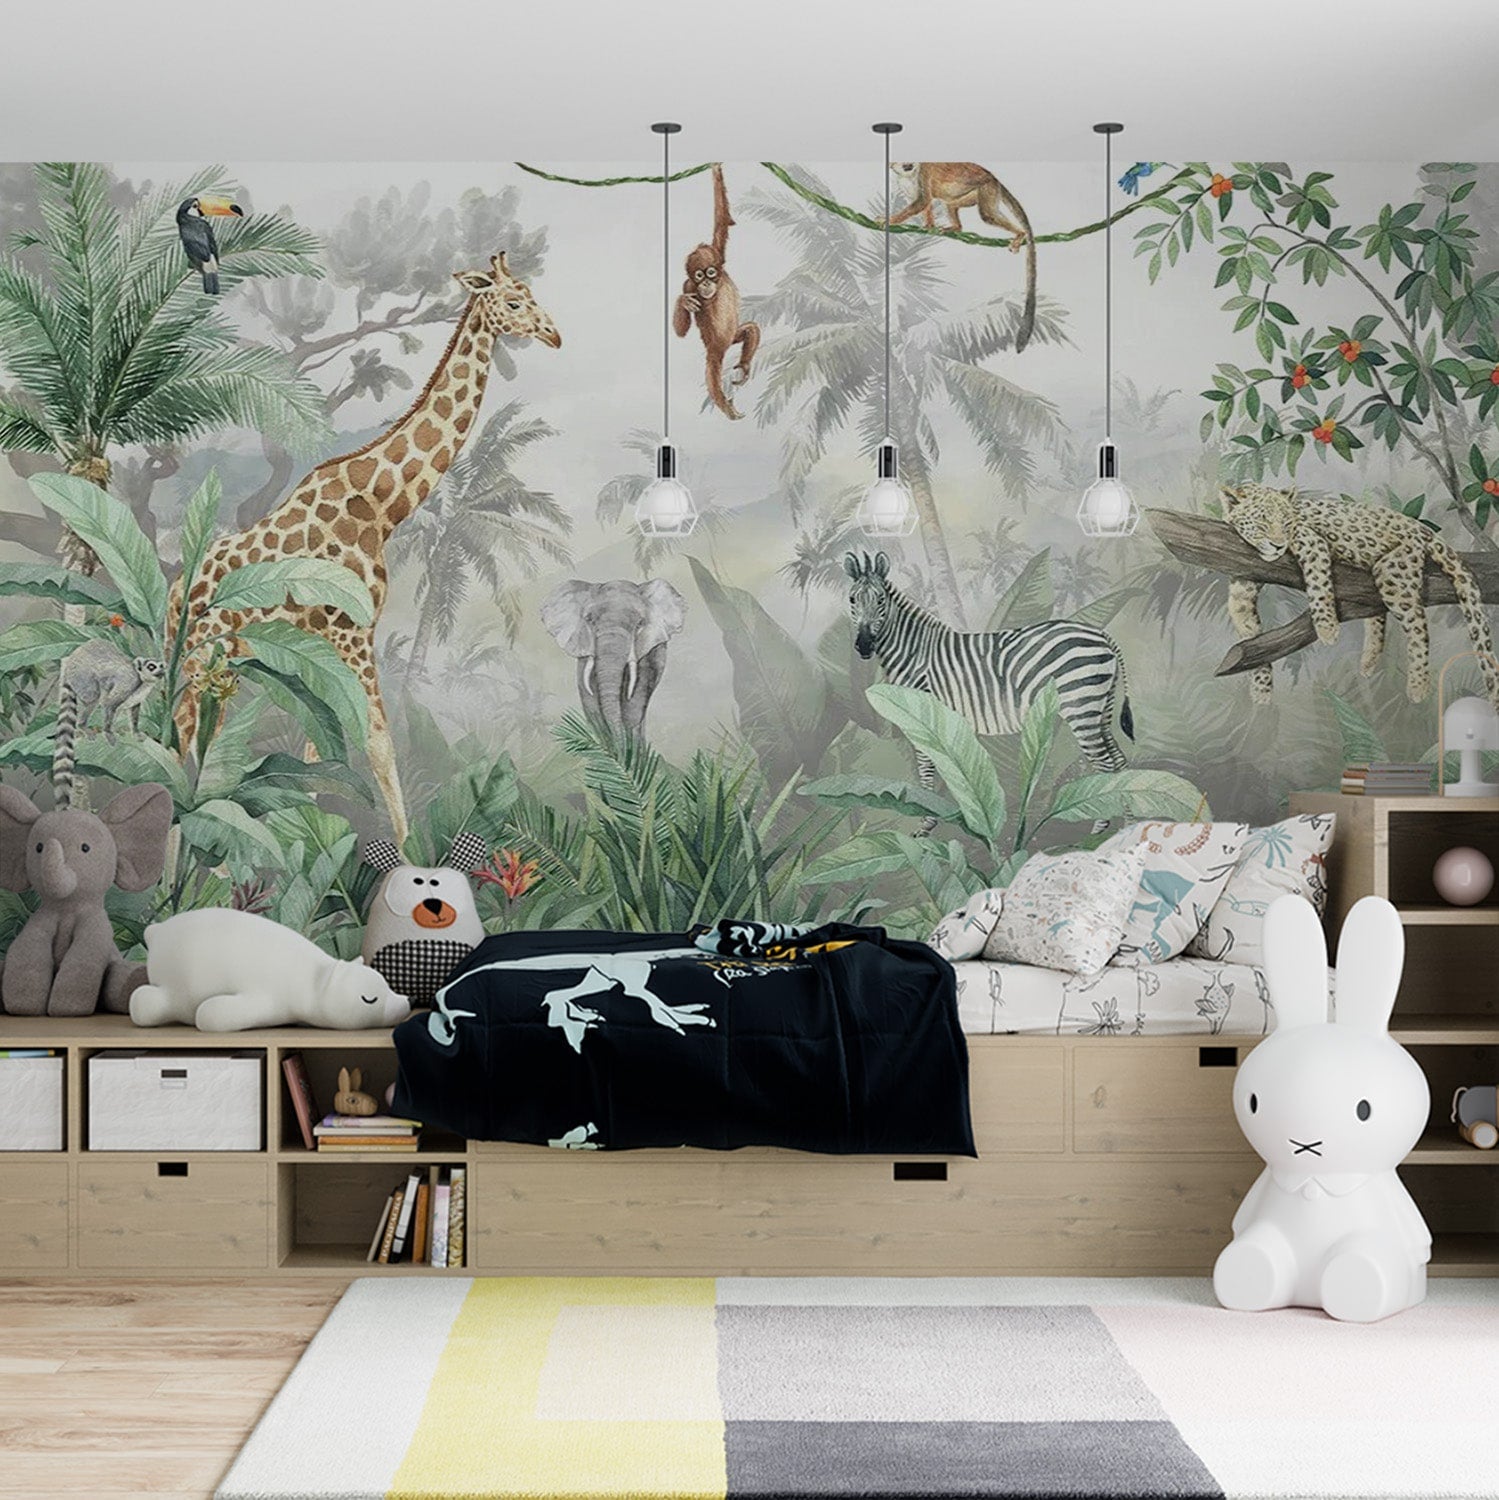 Papier peint jungle avec girafe, éléphant, singe et zèbre